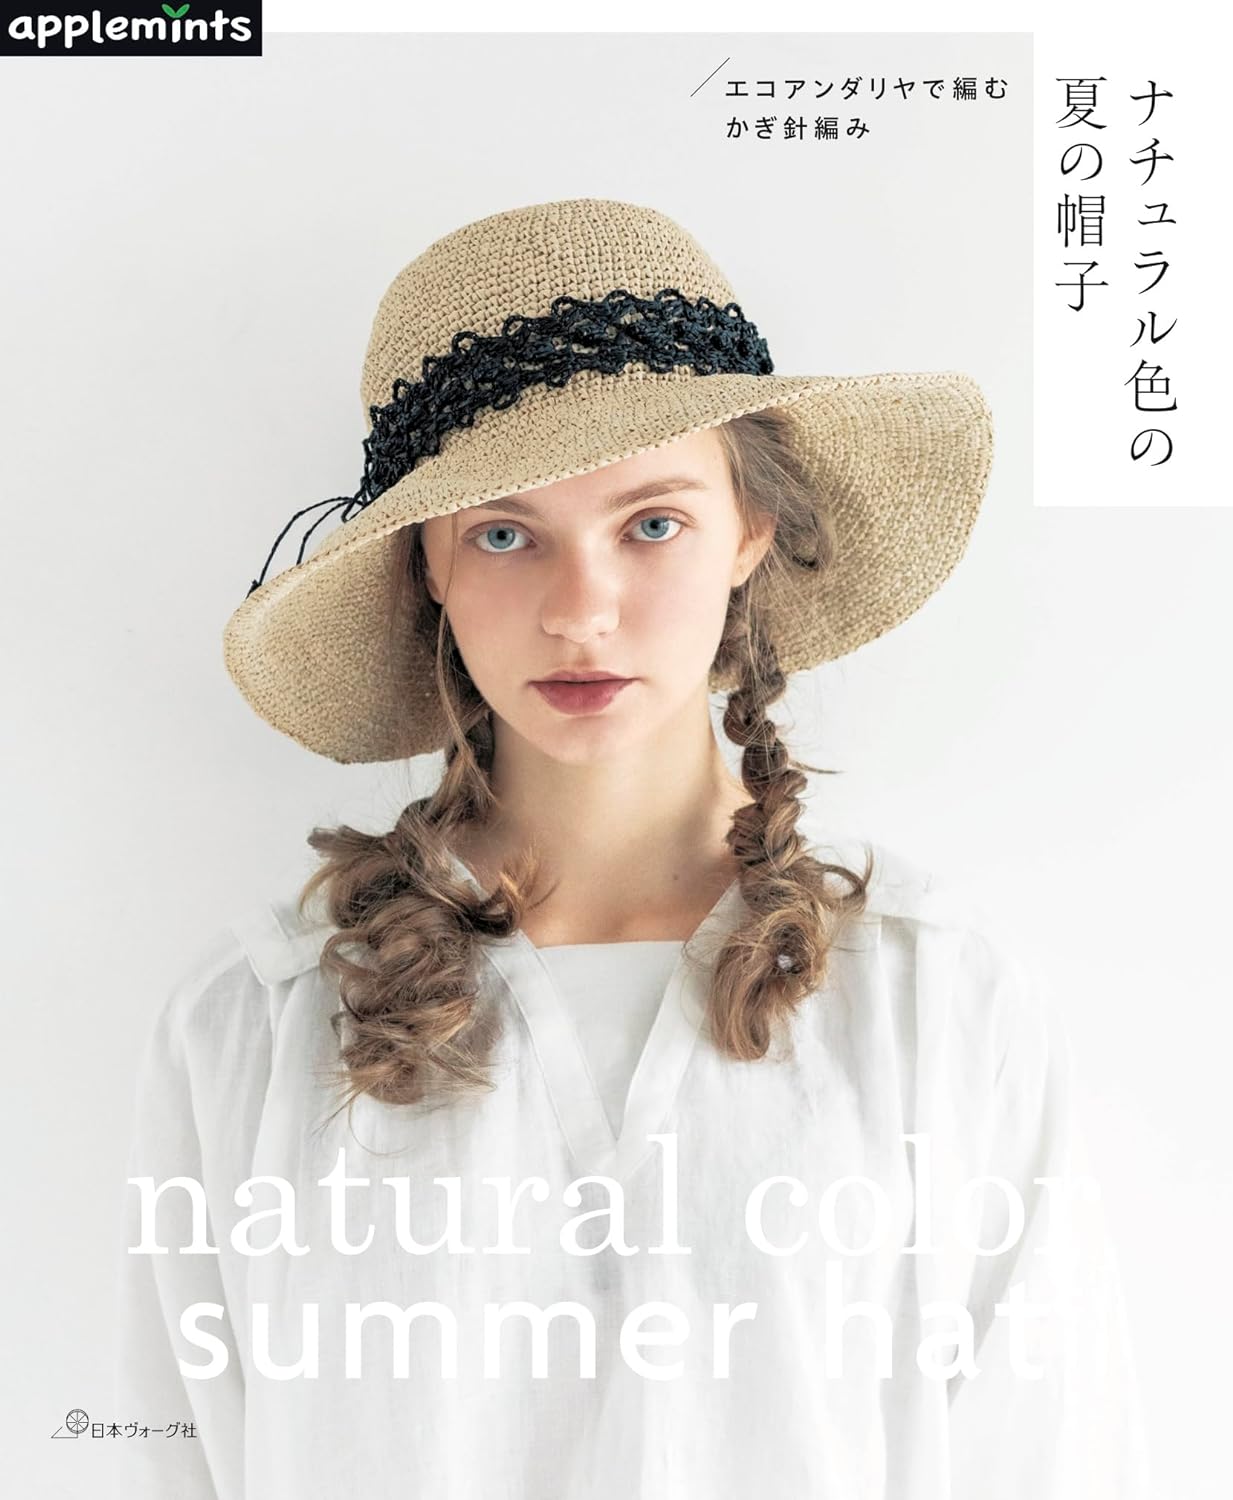 NV72193 ナチュラル色の夏の帽子(Book)